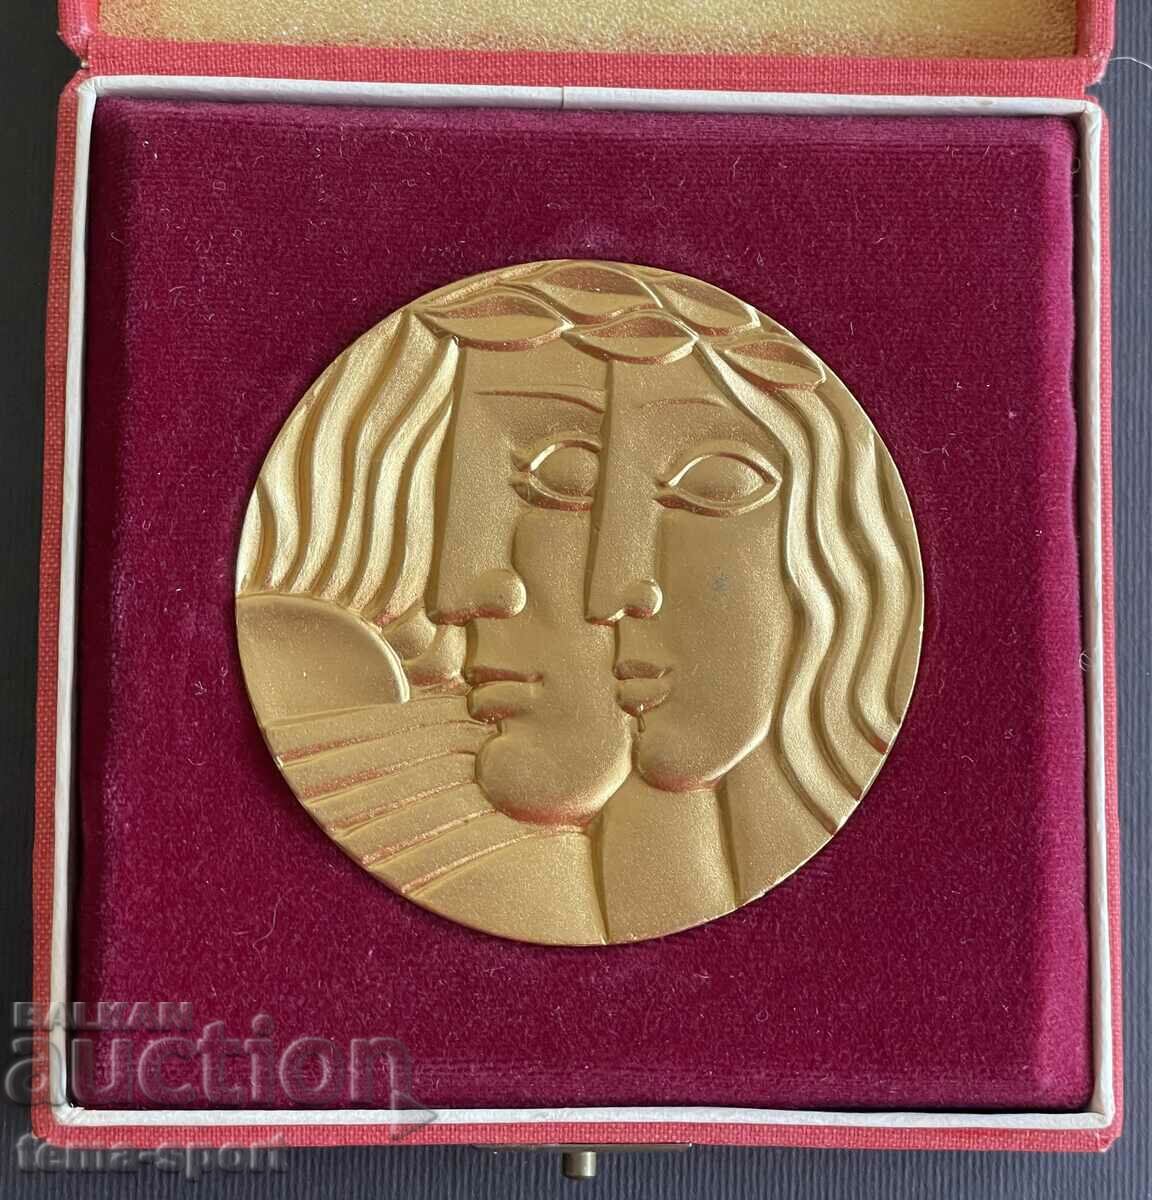 18 Bulgaria Olympic merit plaque BOK gold